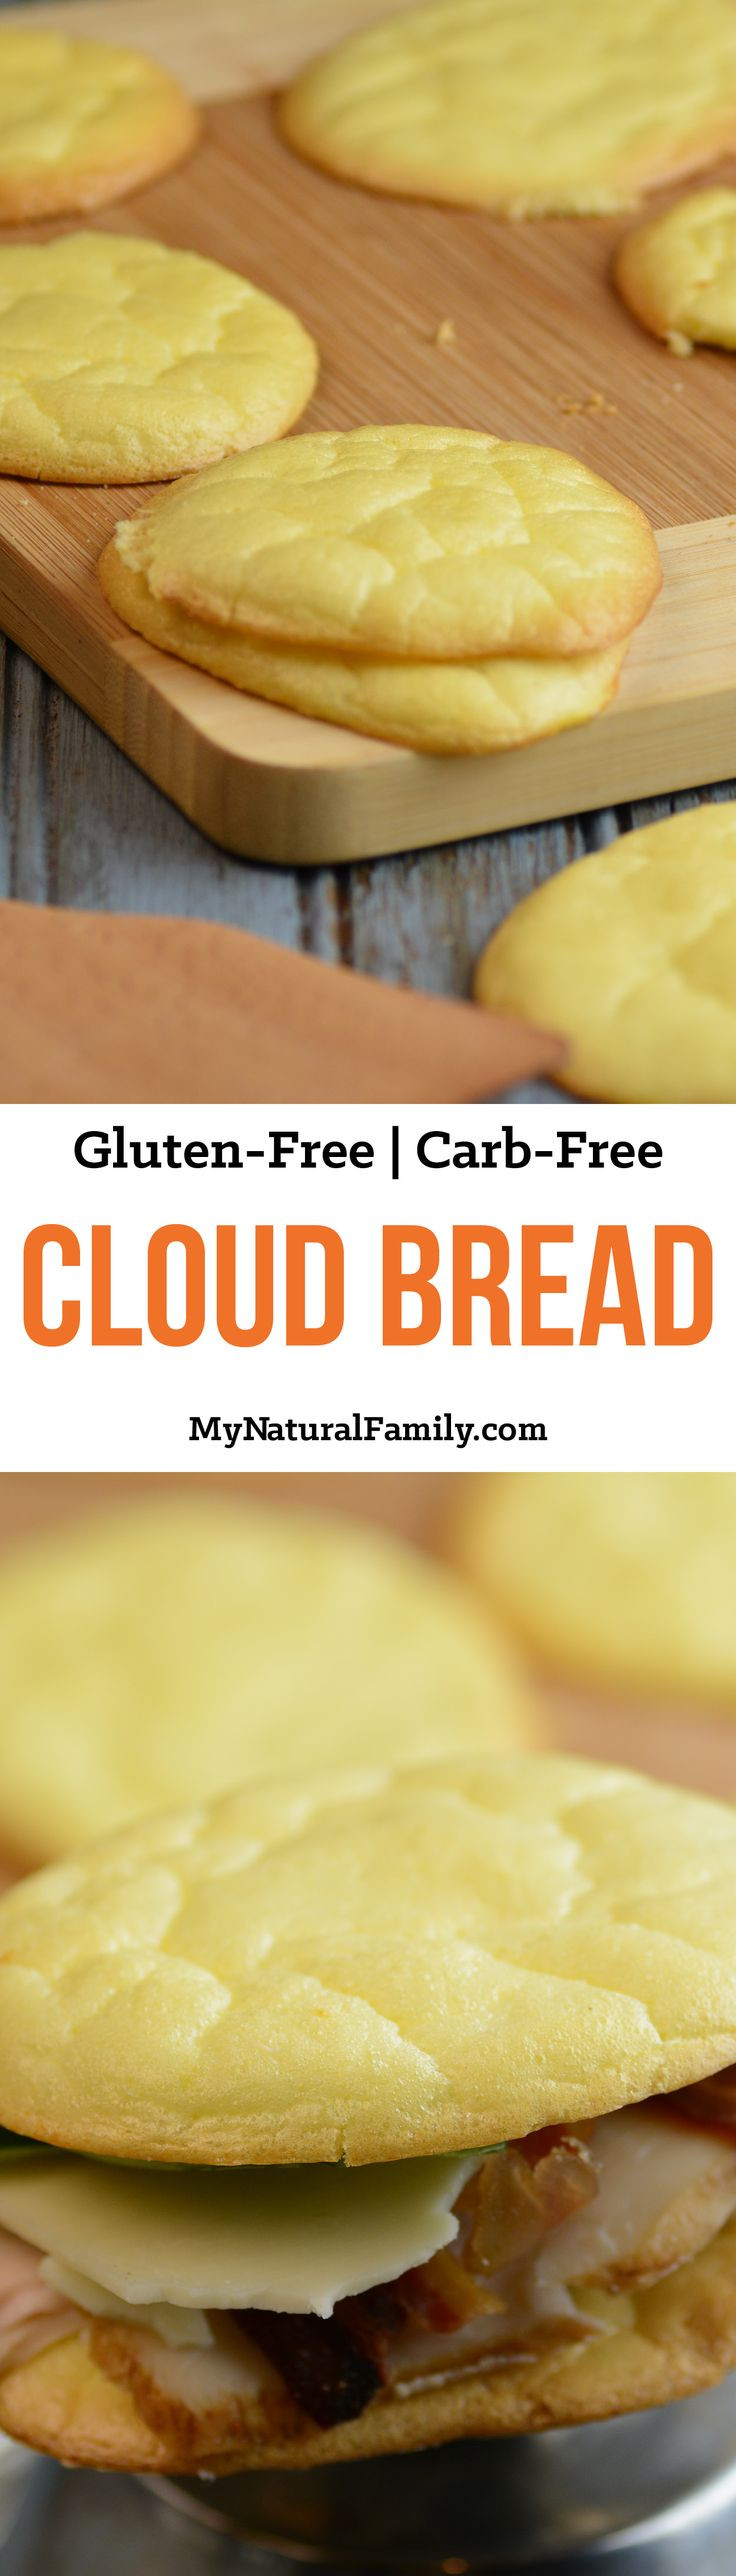 Is Gluten Free Bread Good For Diabetics
 5 Ingre nt Cloud Bread Recipe Gluten Free Carb Free